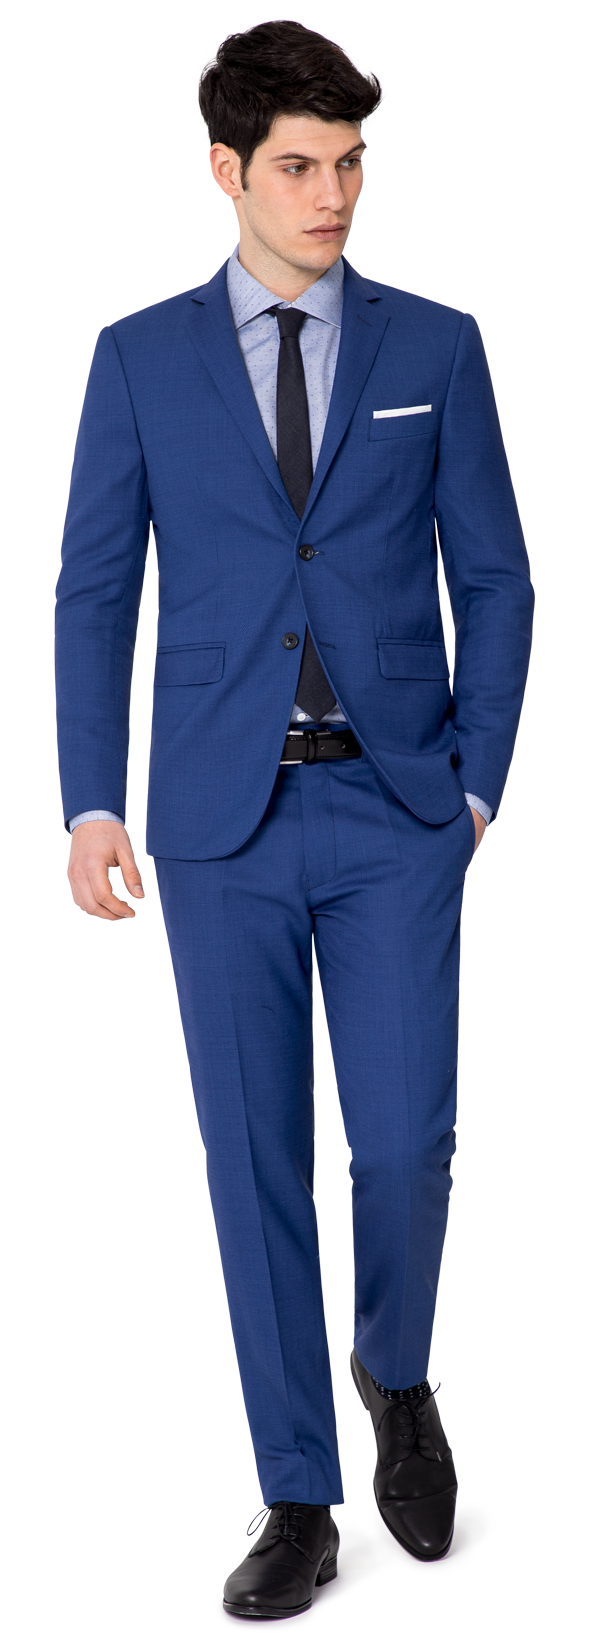 Royal Blue Suits | Shop royal blue suit online - Hockerty